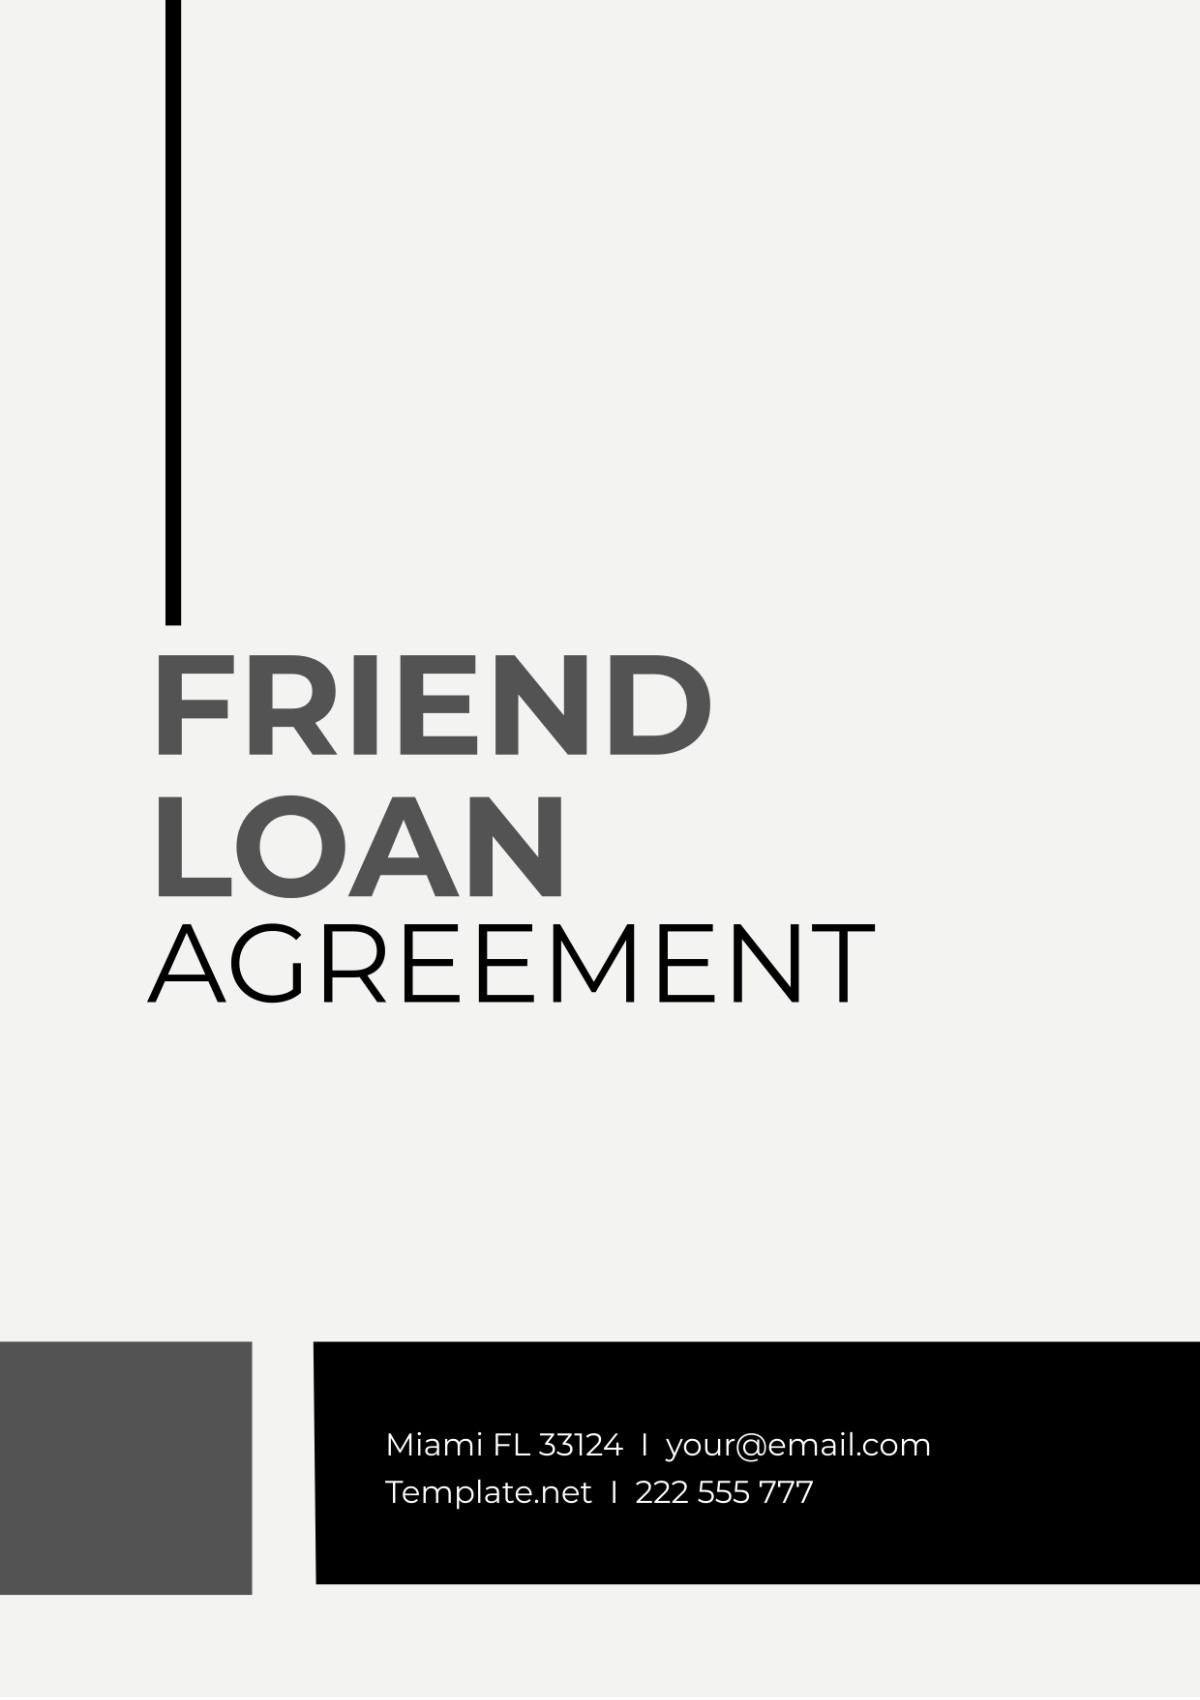 Friend Loan Agreement Template